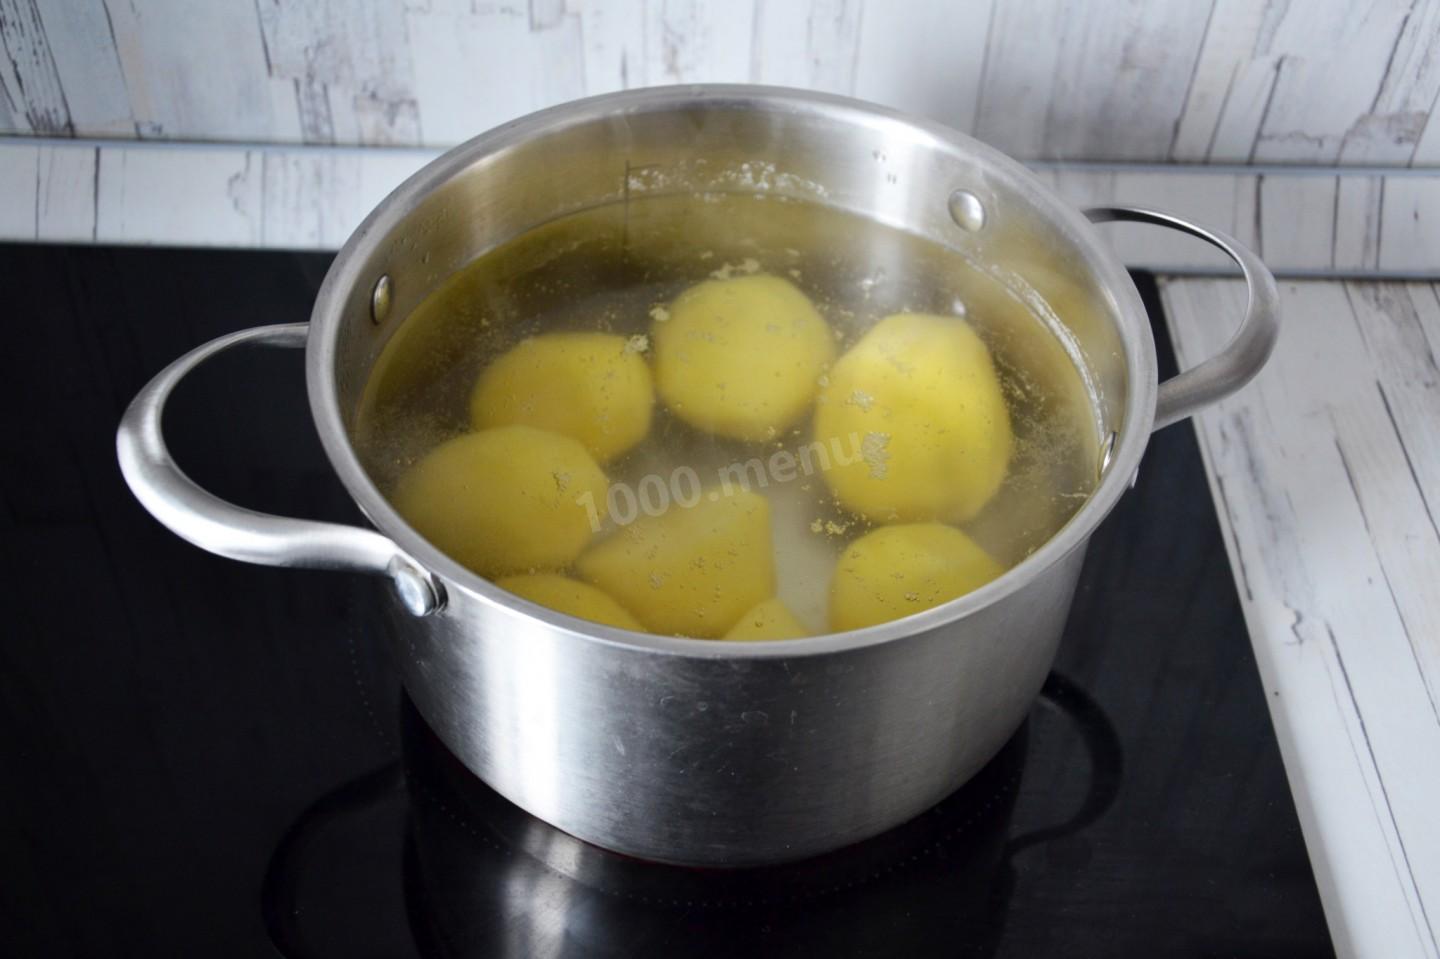 Картошка с водой в кастрюле. Картошка в кастрюле. Картошка в масле в кастрюле. Картофельная вода. Картошка варится в кастрюльке.